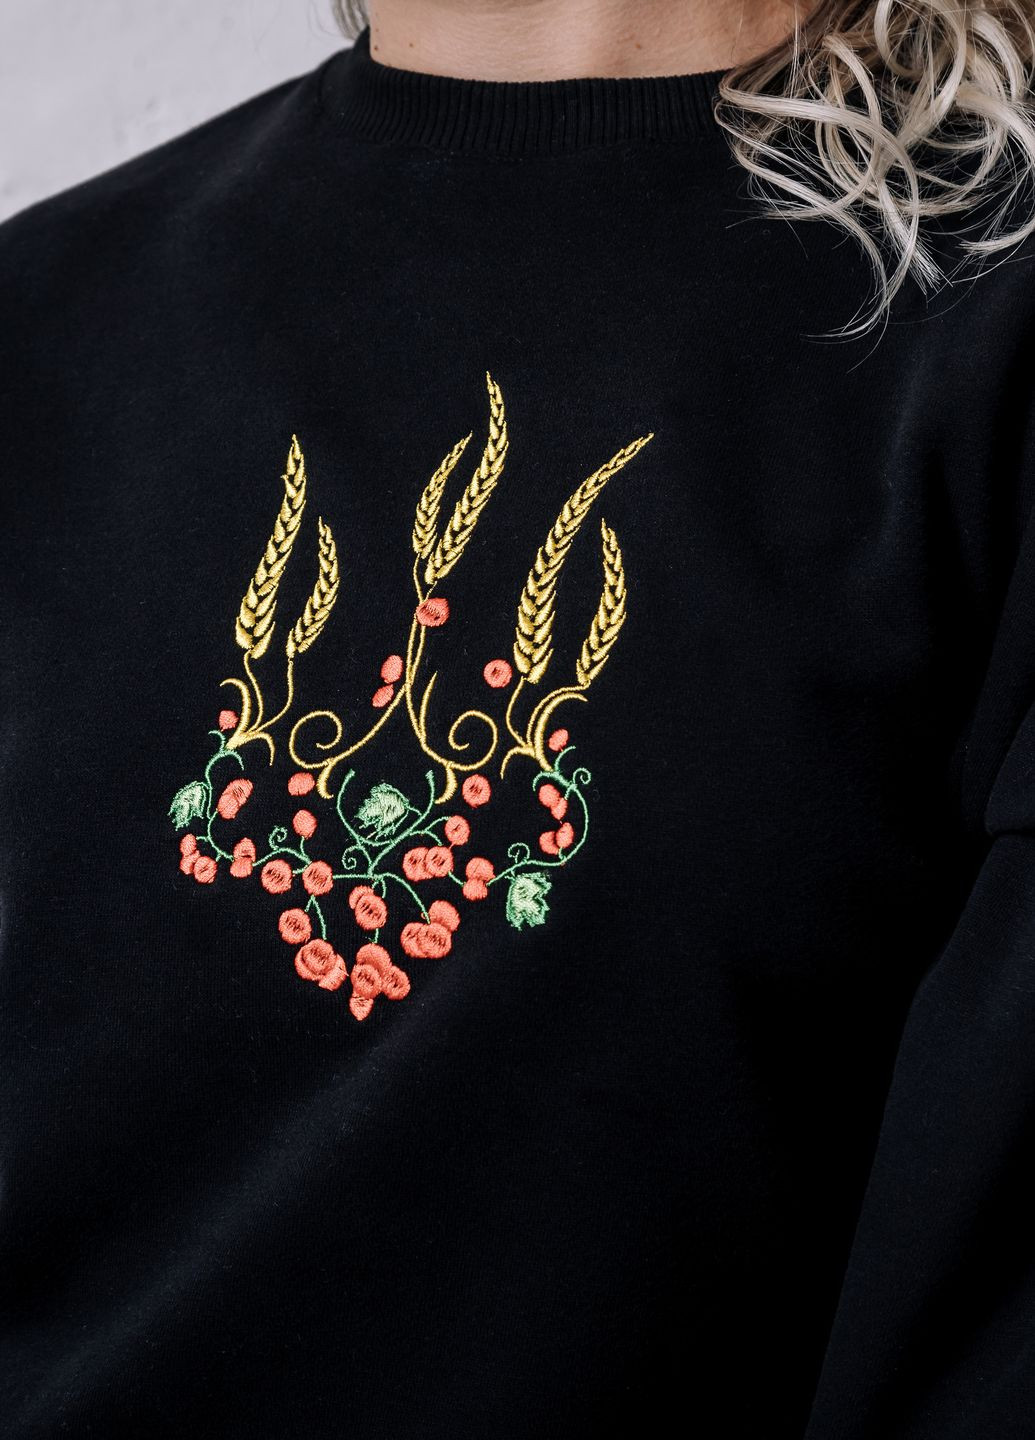 Женский свитшот с вышивкой "Тризуб красная калина" VINCA - крой украинская символика черный повседневный хлопок, трикотаж - (264074407)